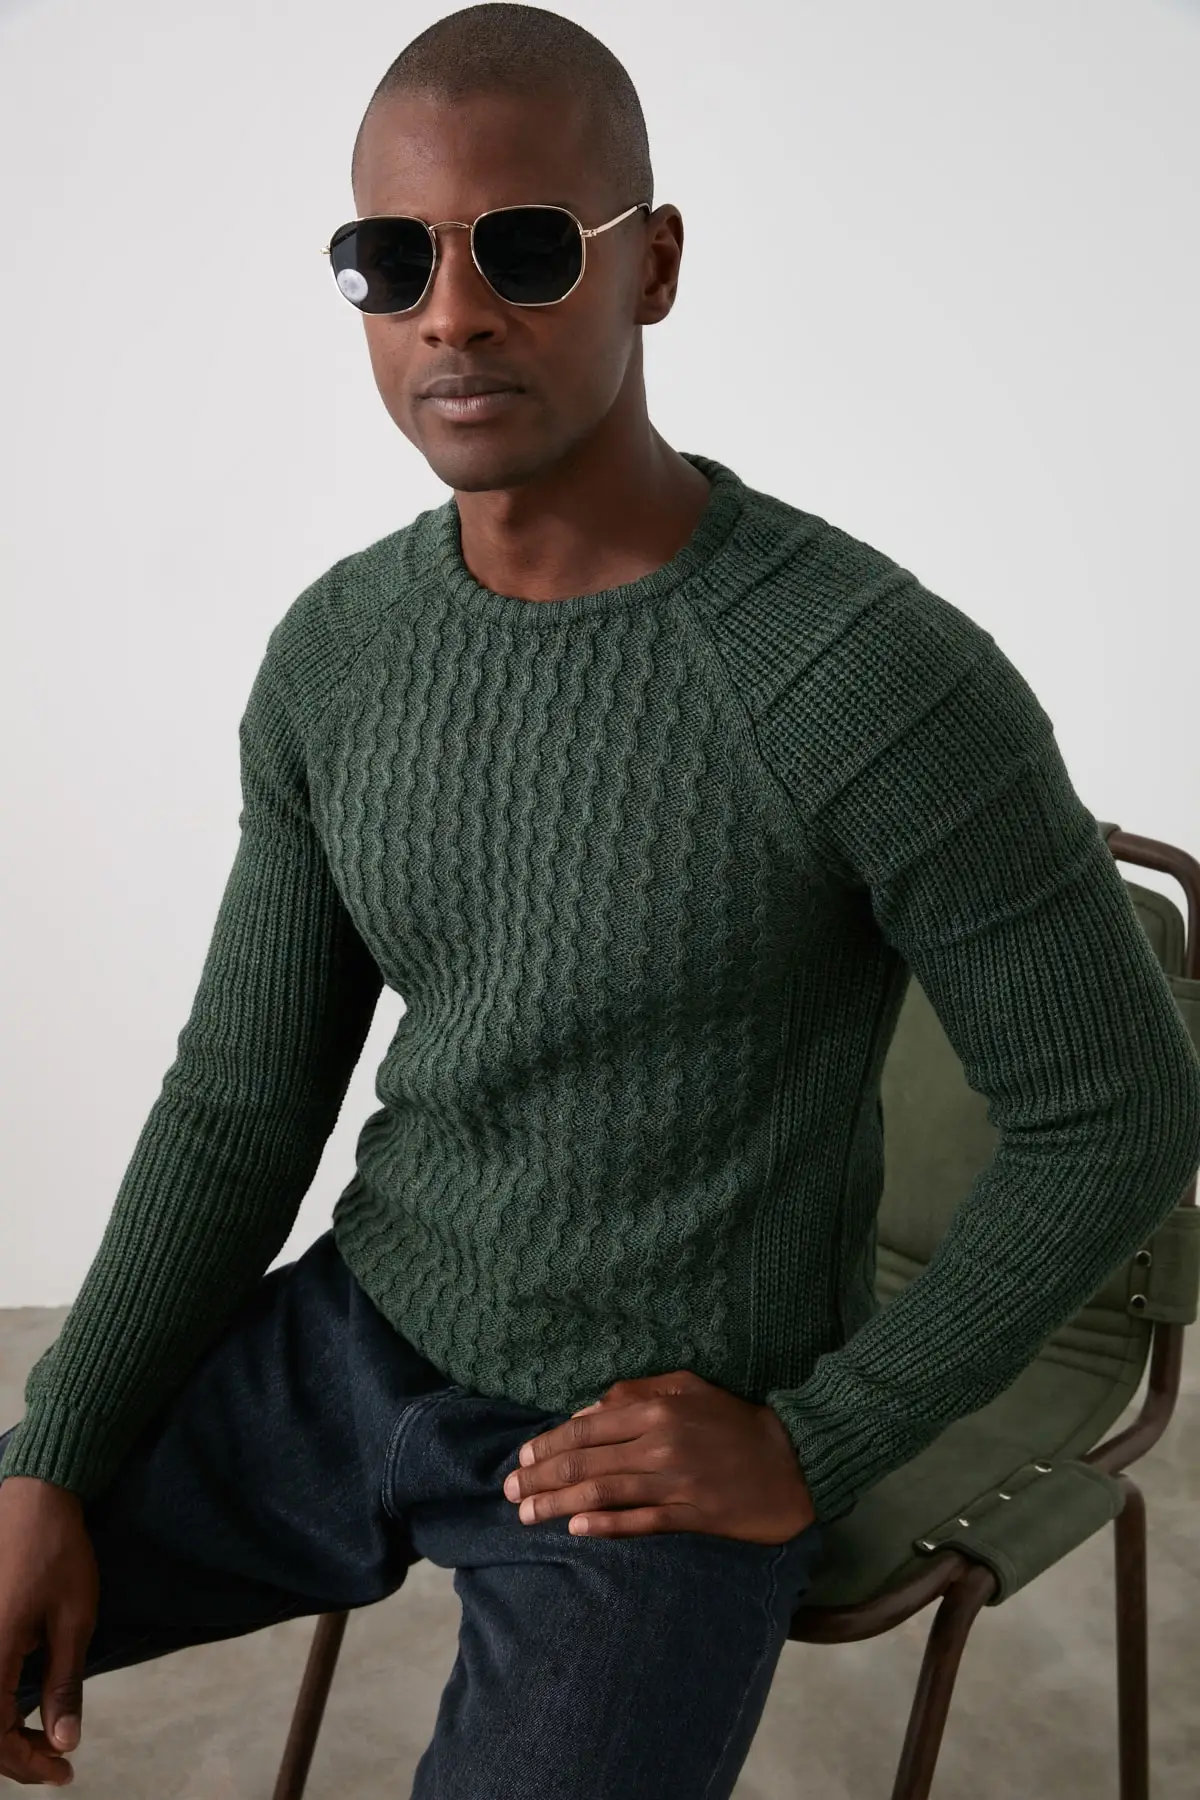 

Мужской трикотажный свитер с рукавом реглан